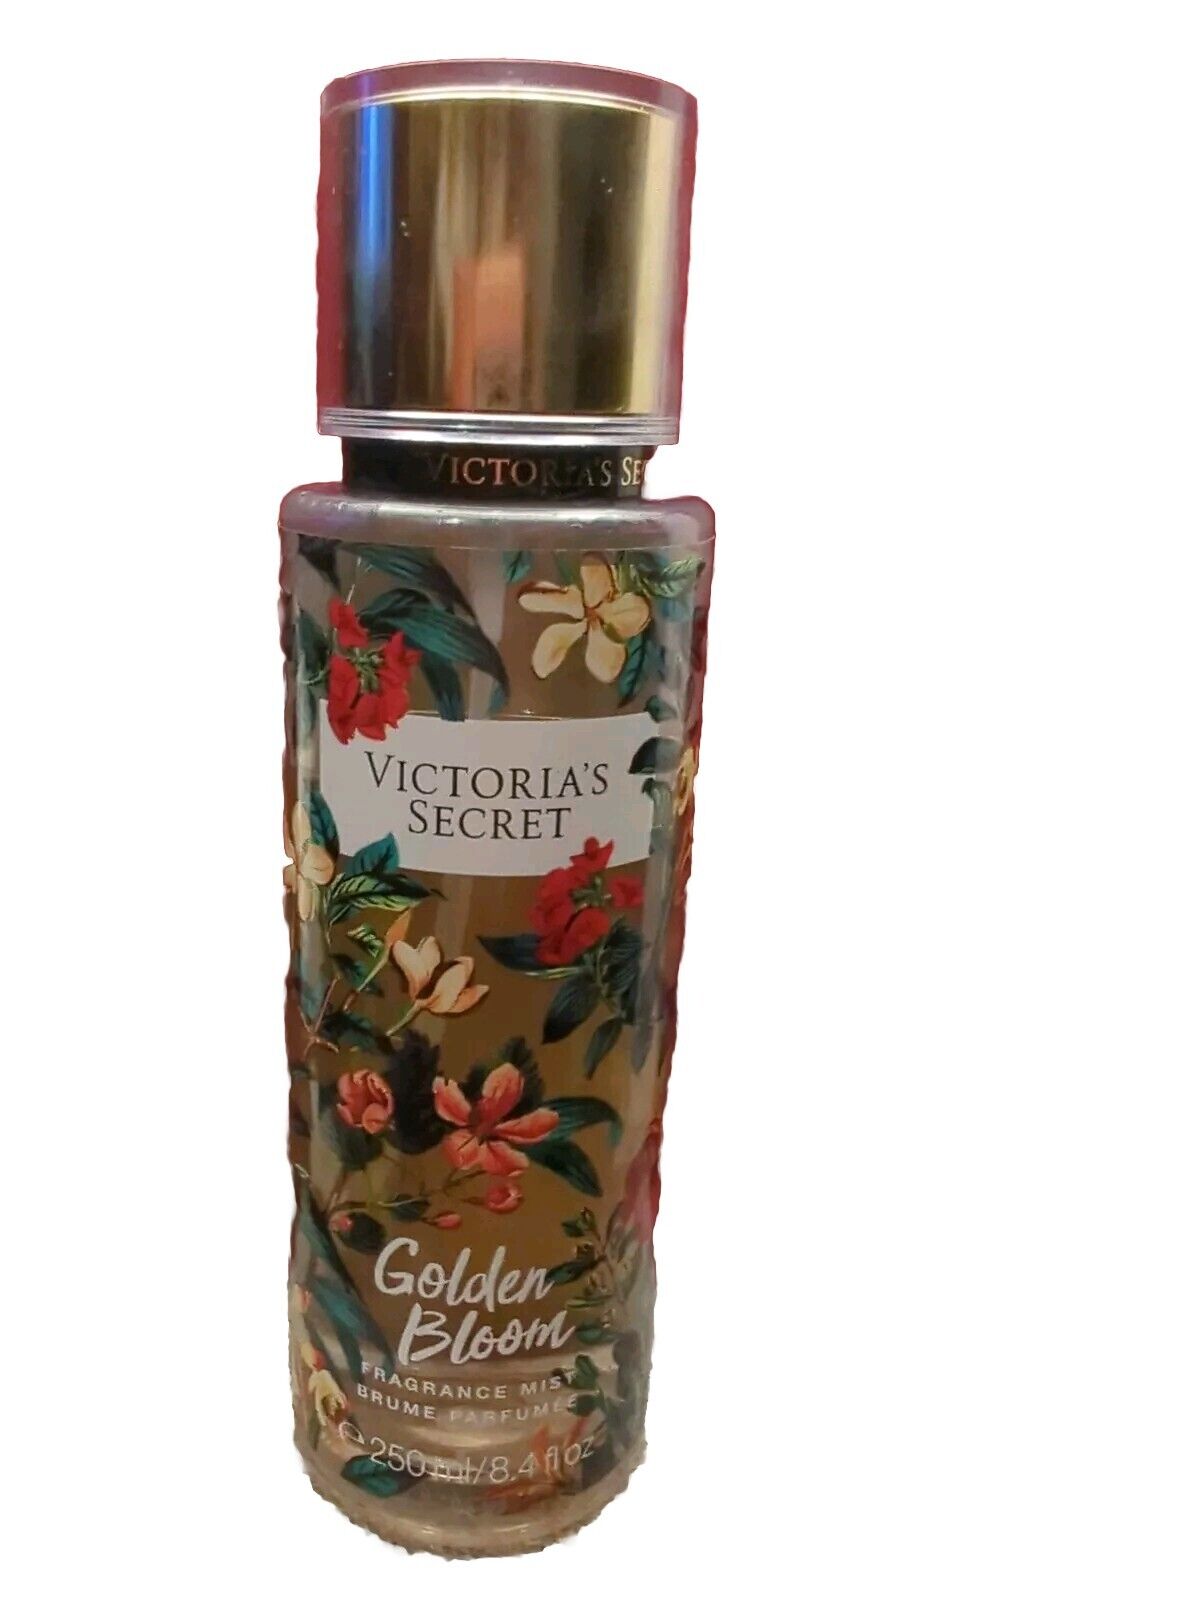 Victoria's Secret Limited Edition Golden Bloom 8.4oz Fragrance Mist